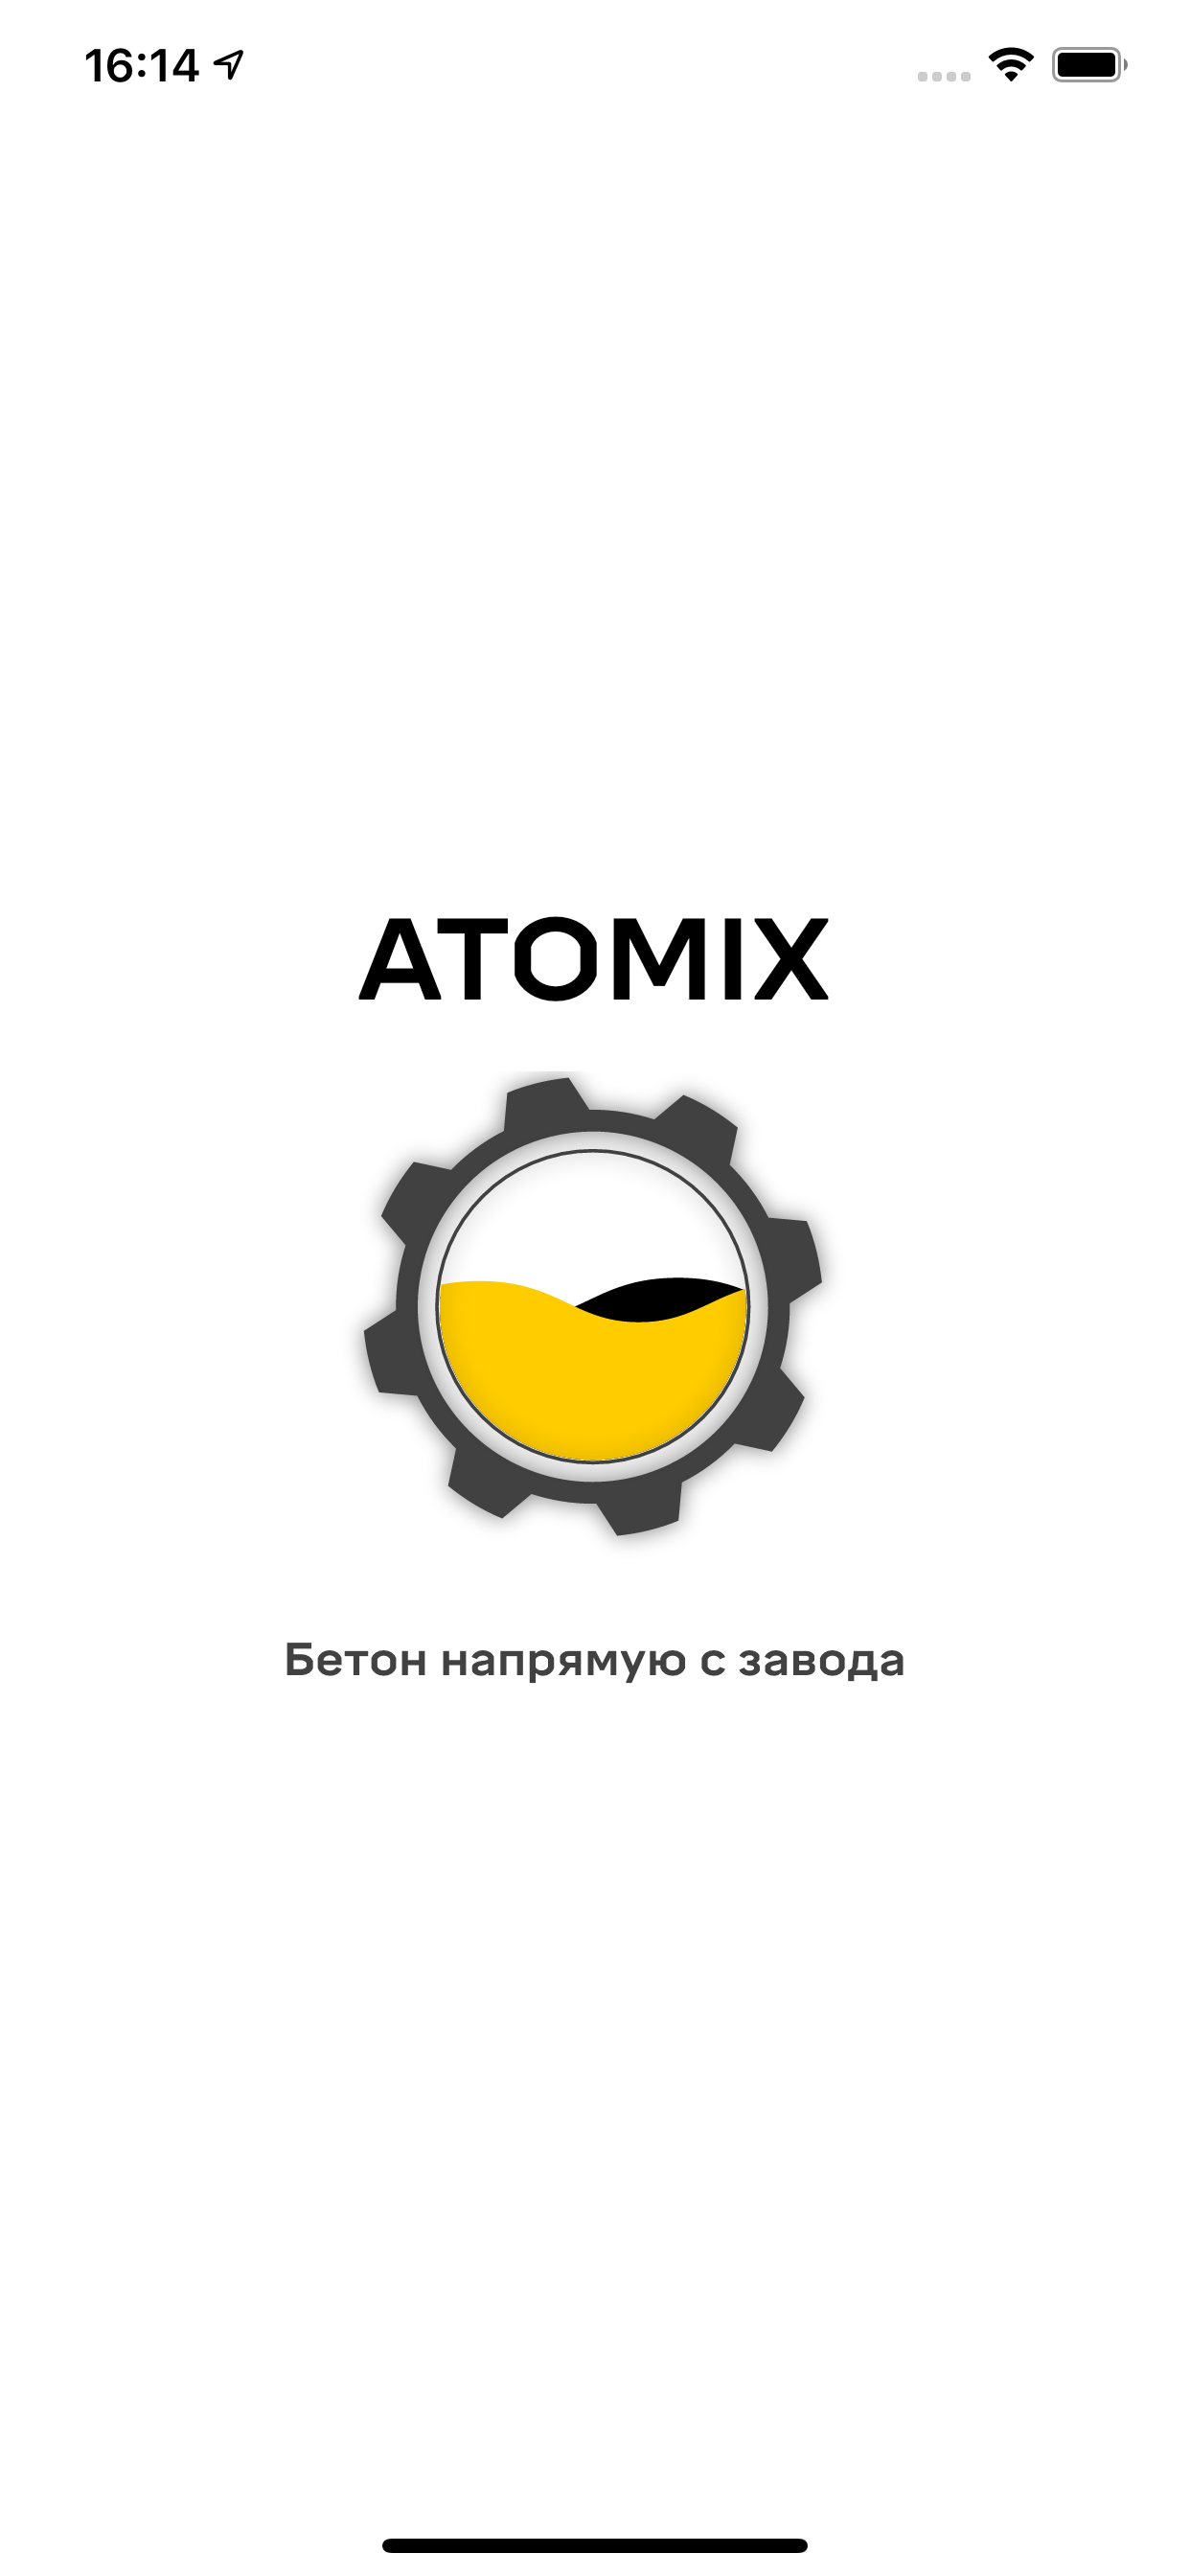 Изображение: Atomix: доставка бетона